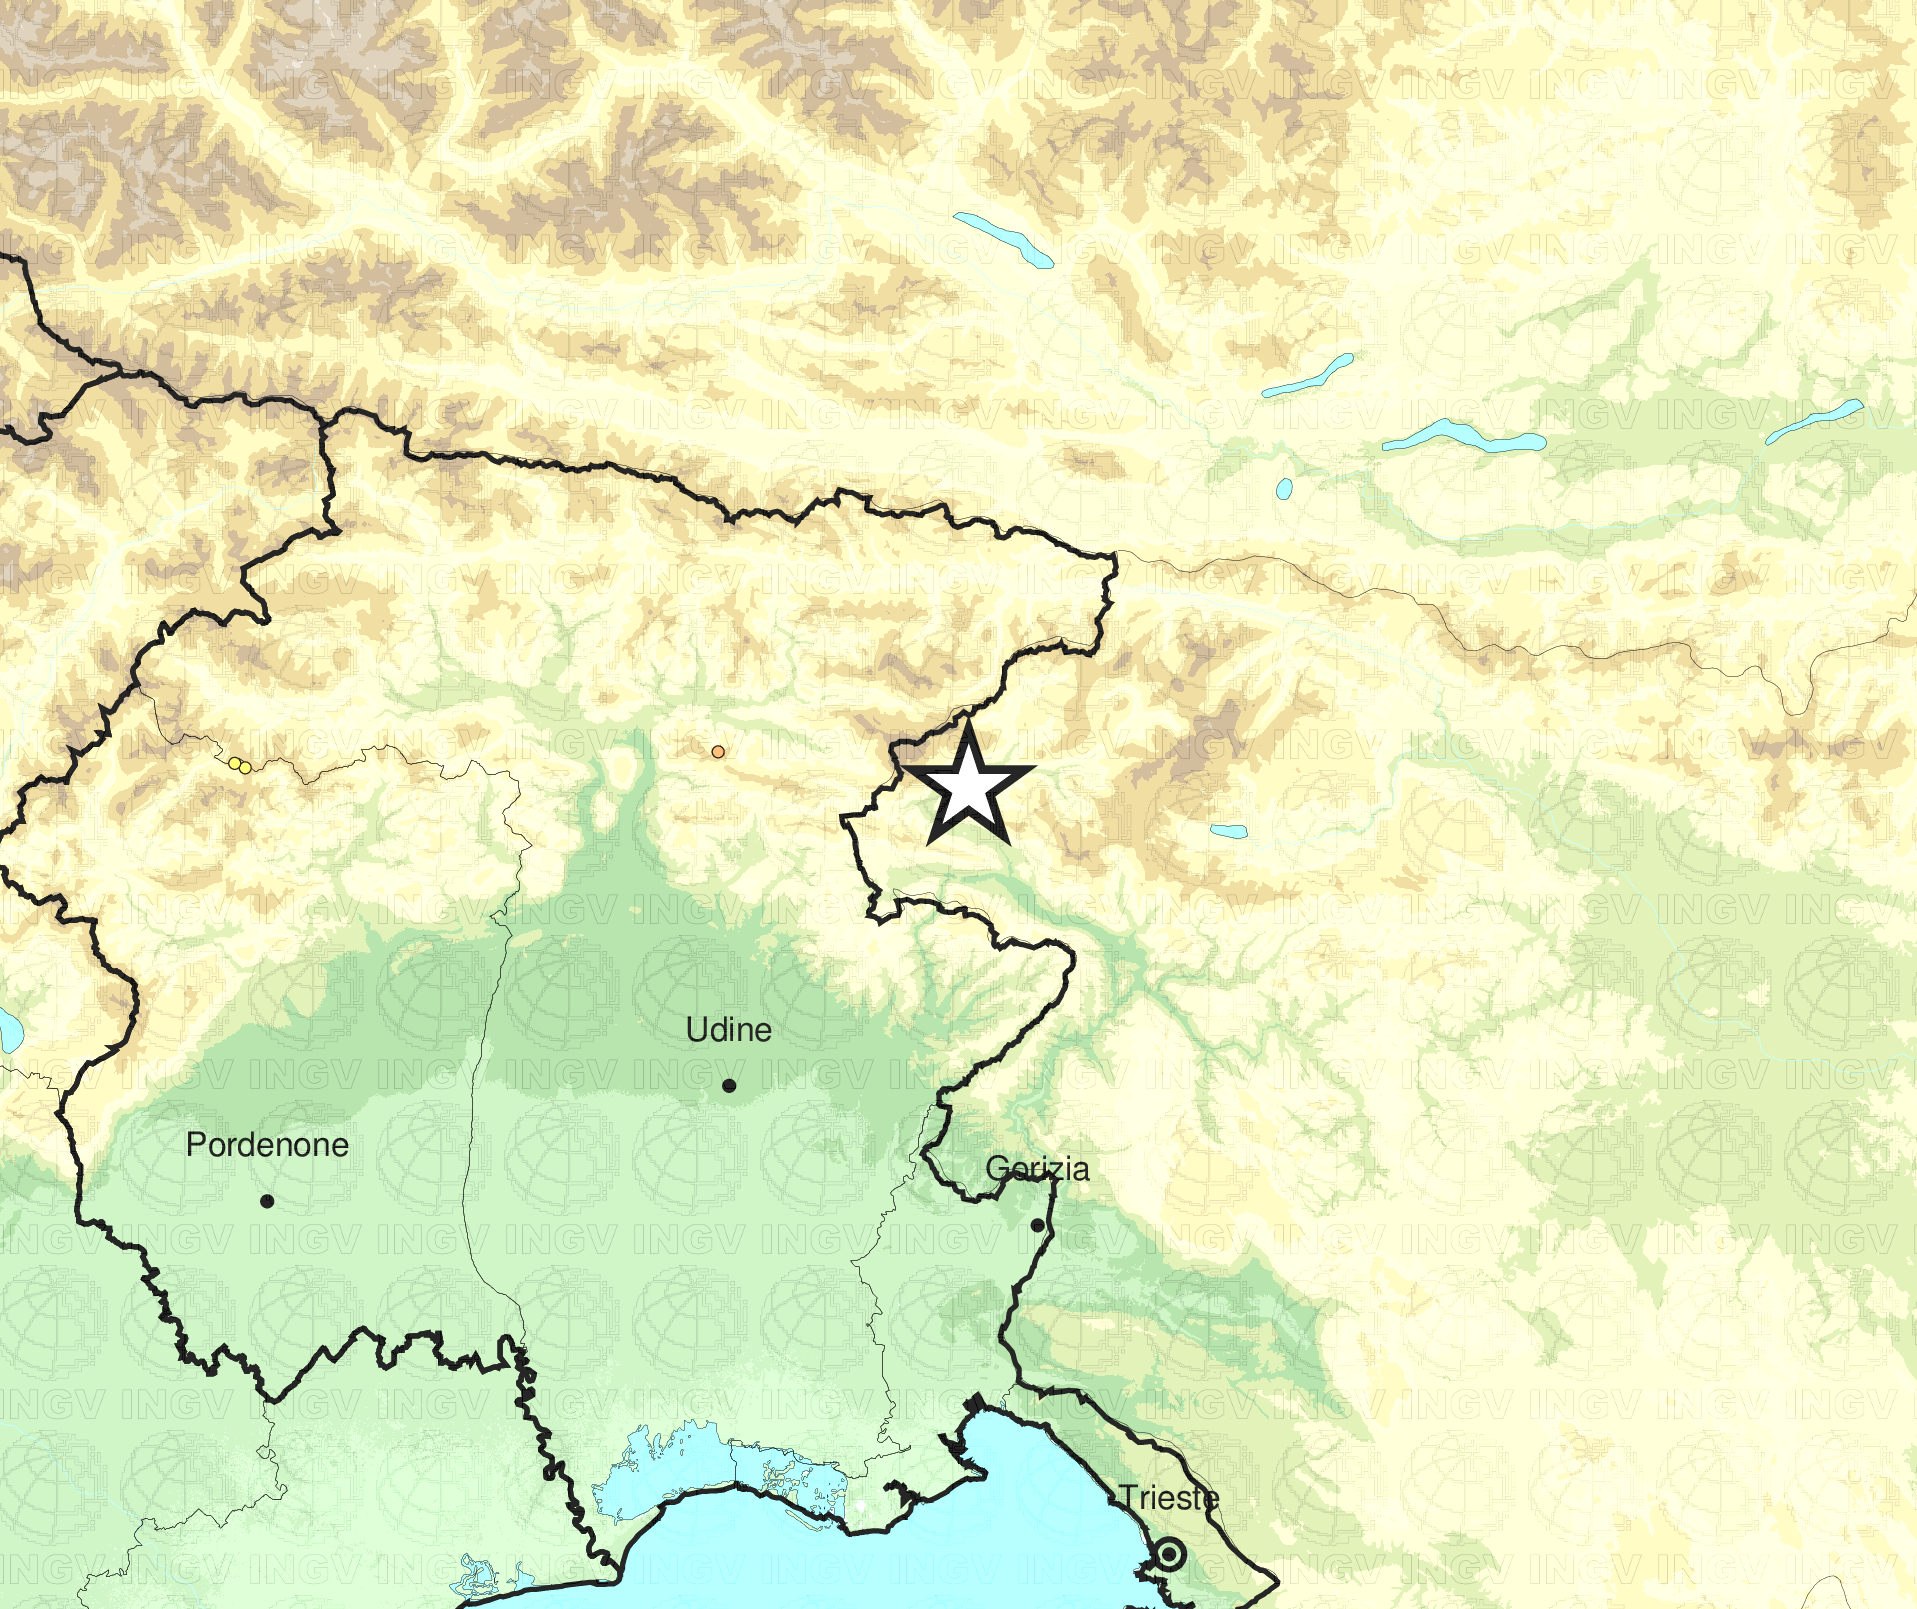 terremoto Friuli 17 luglio